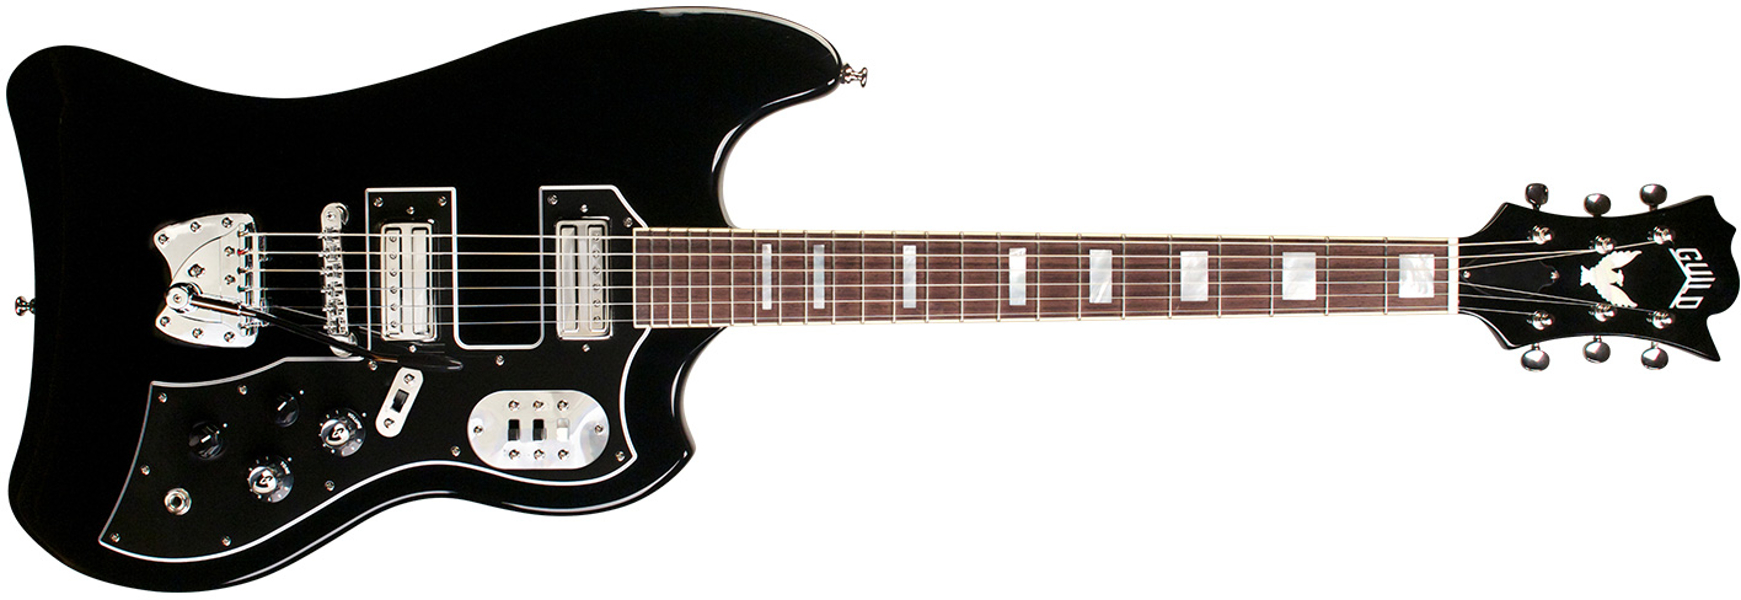 Guild S-200 T-bird - Noir - Retro-rock elektrische gitaar - Variation 1